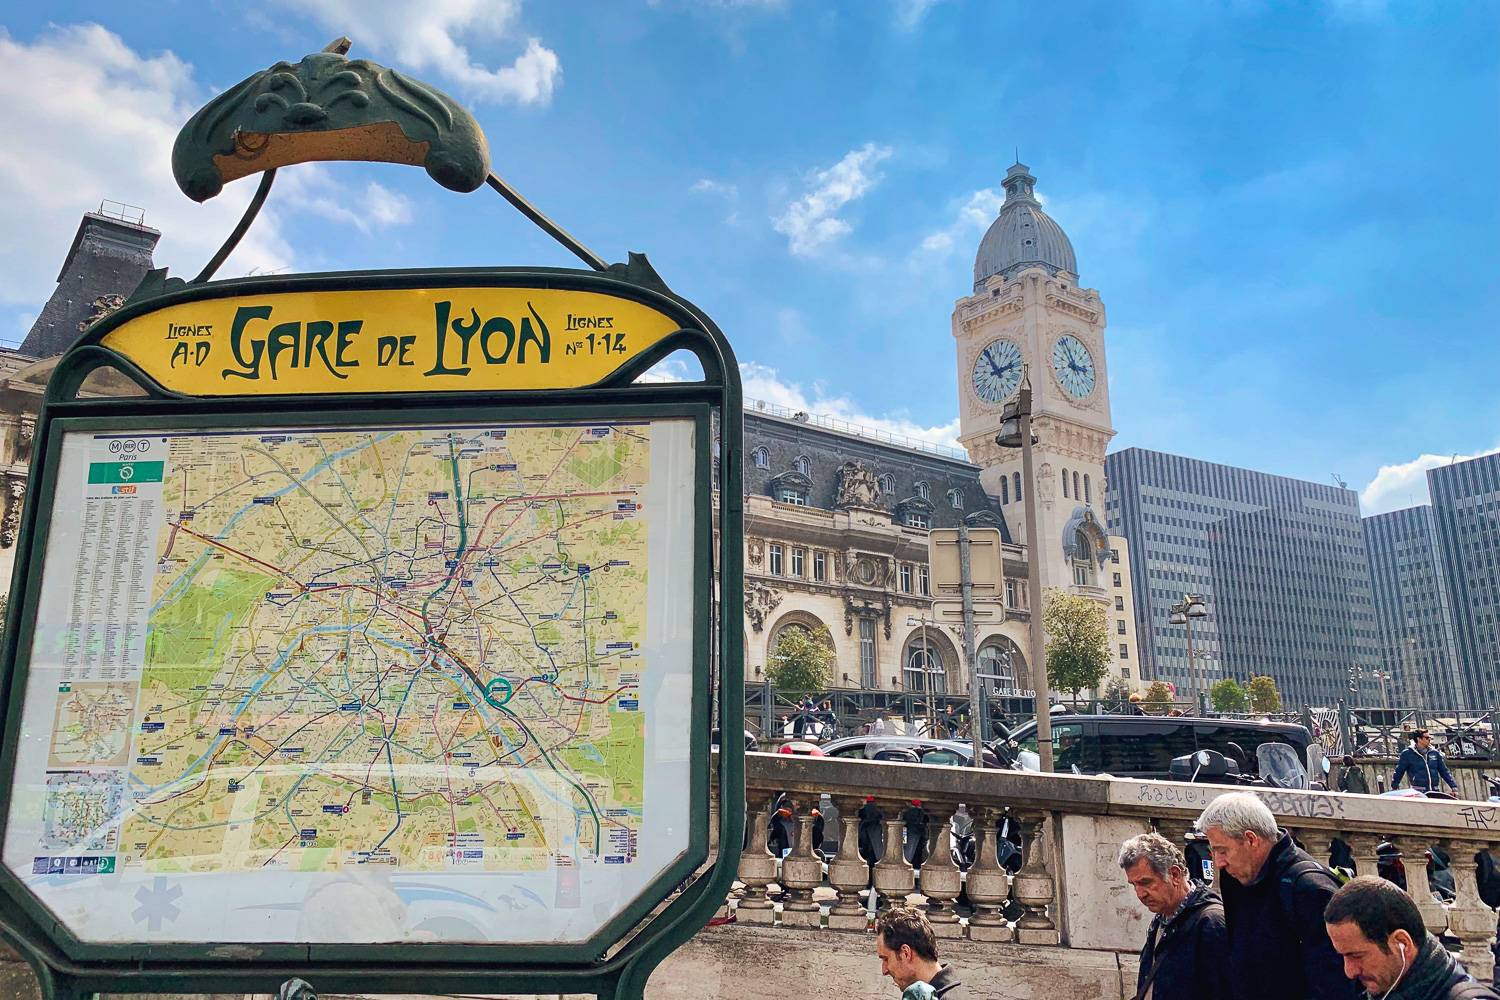 Cómo usar el transporte en París: aeropuertos y trenes